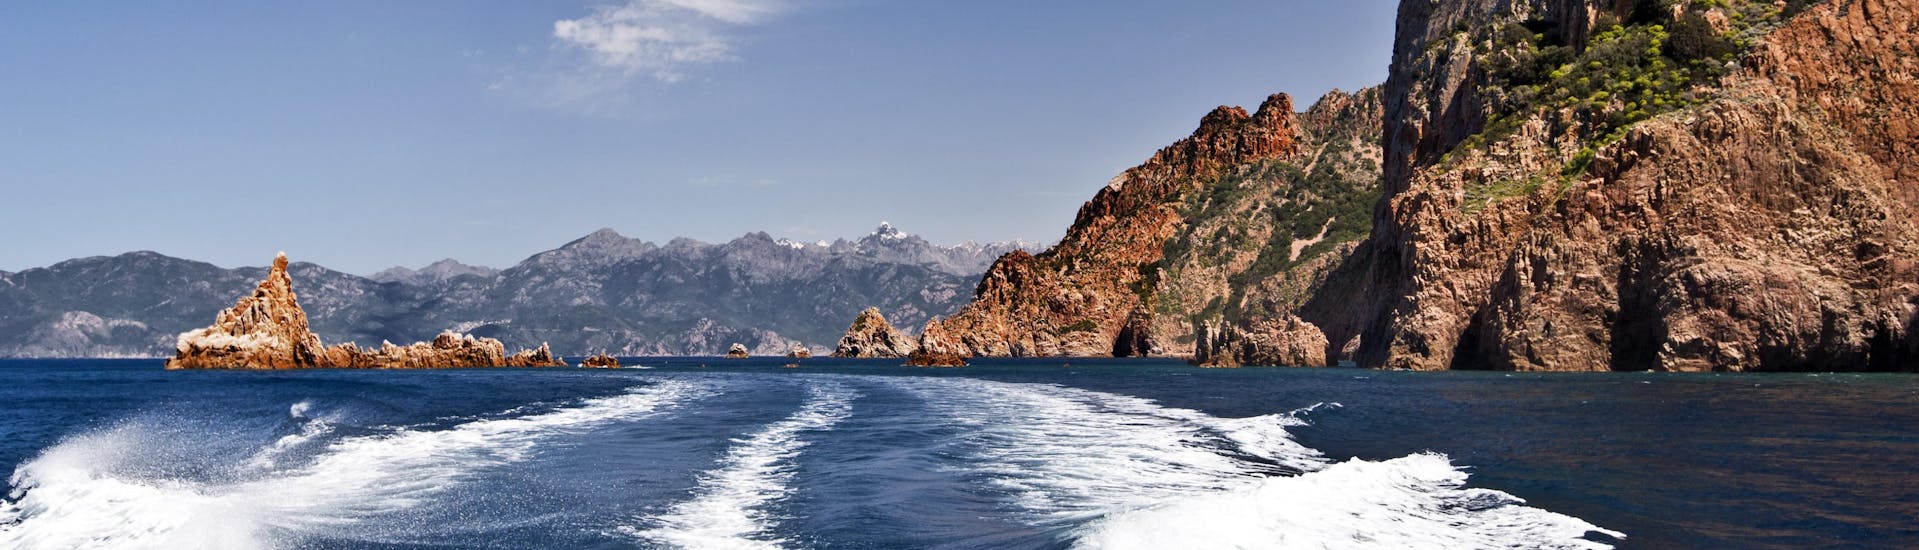 Vista dal retro di un'imbarcazione durante una gita in barca nelle suggestive Calanques de Piana, sulla costa occidentale della Corsica.